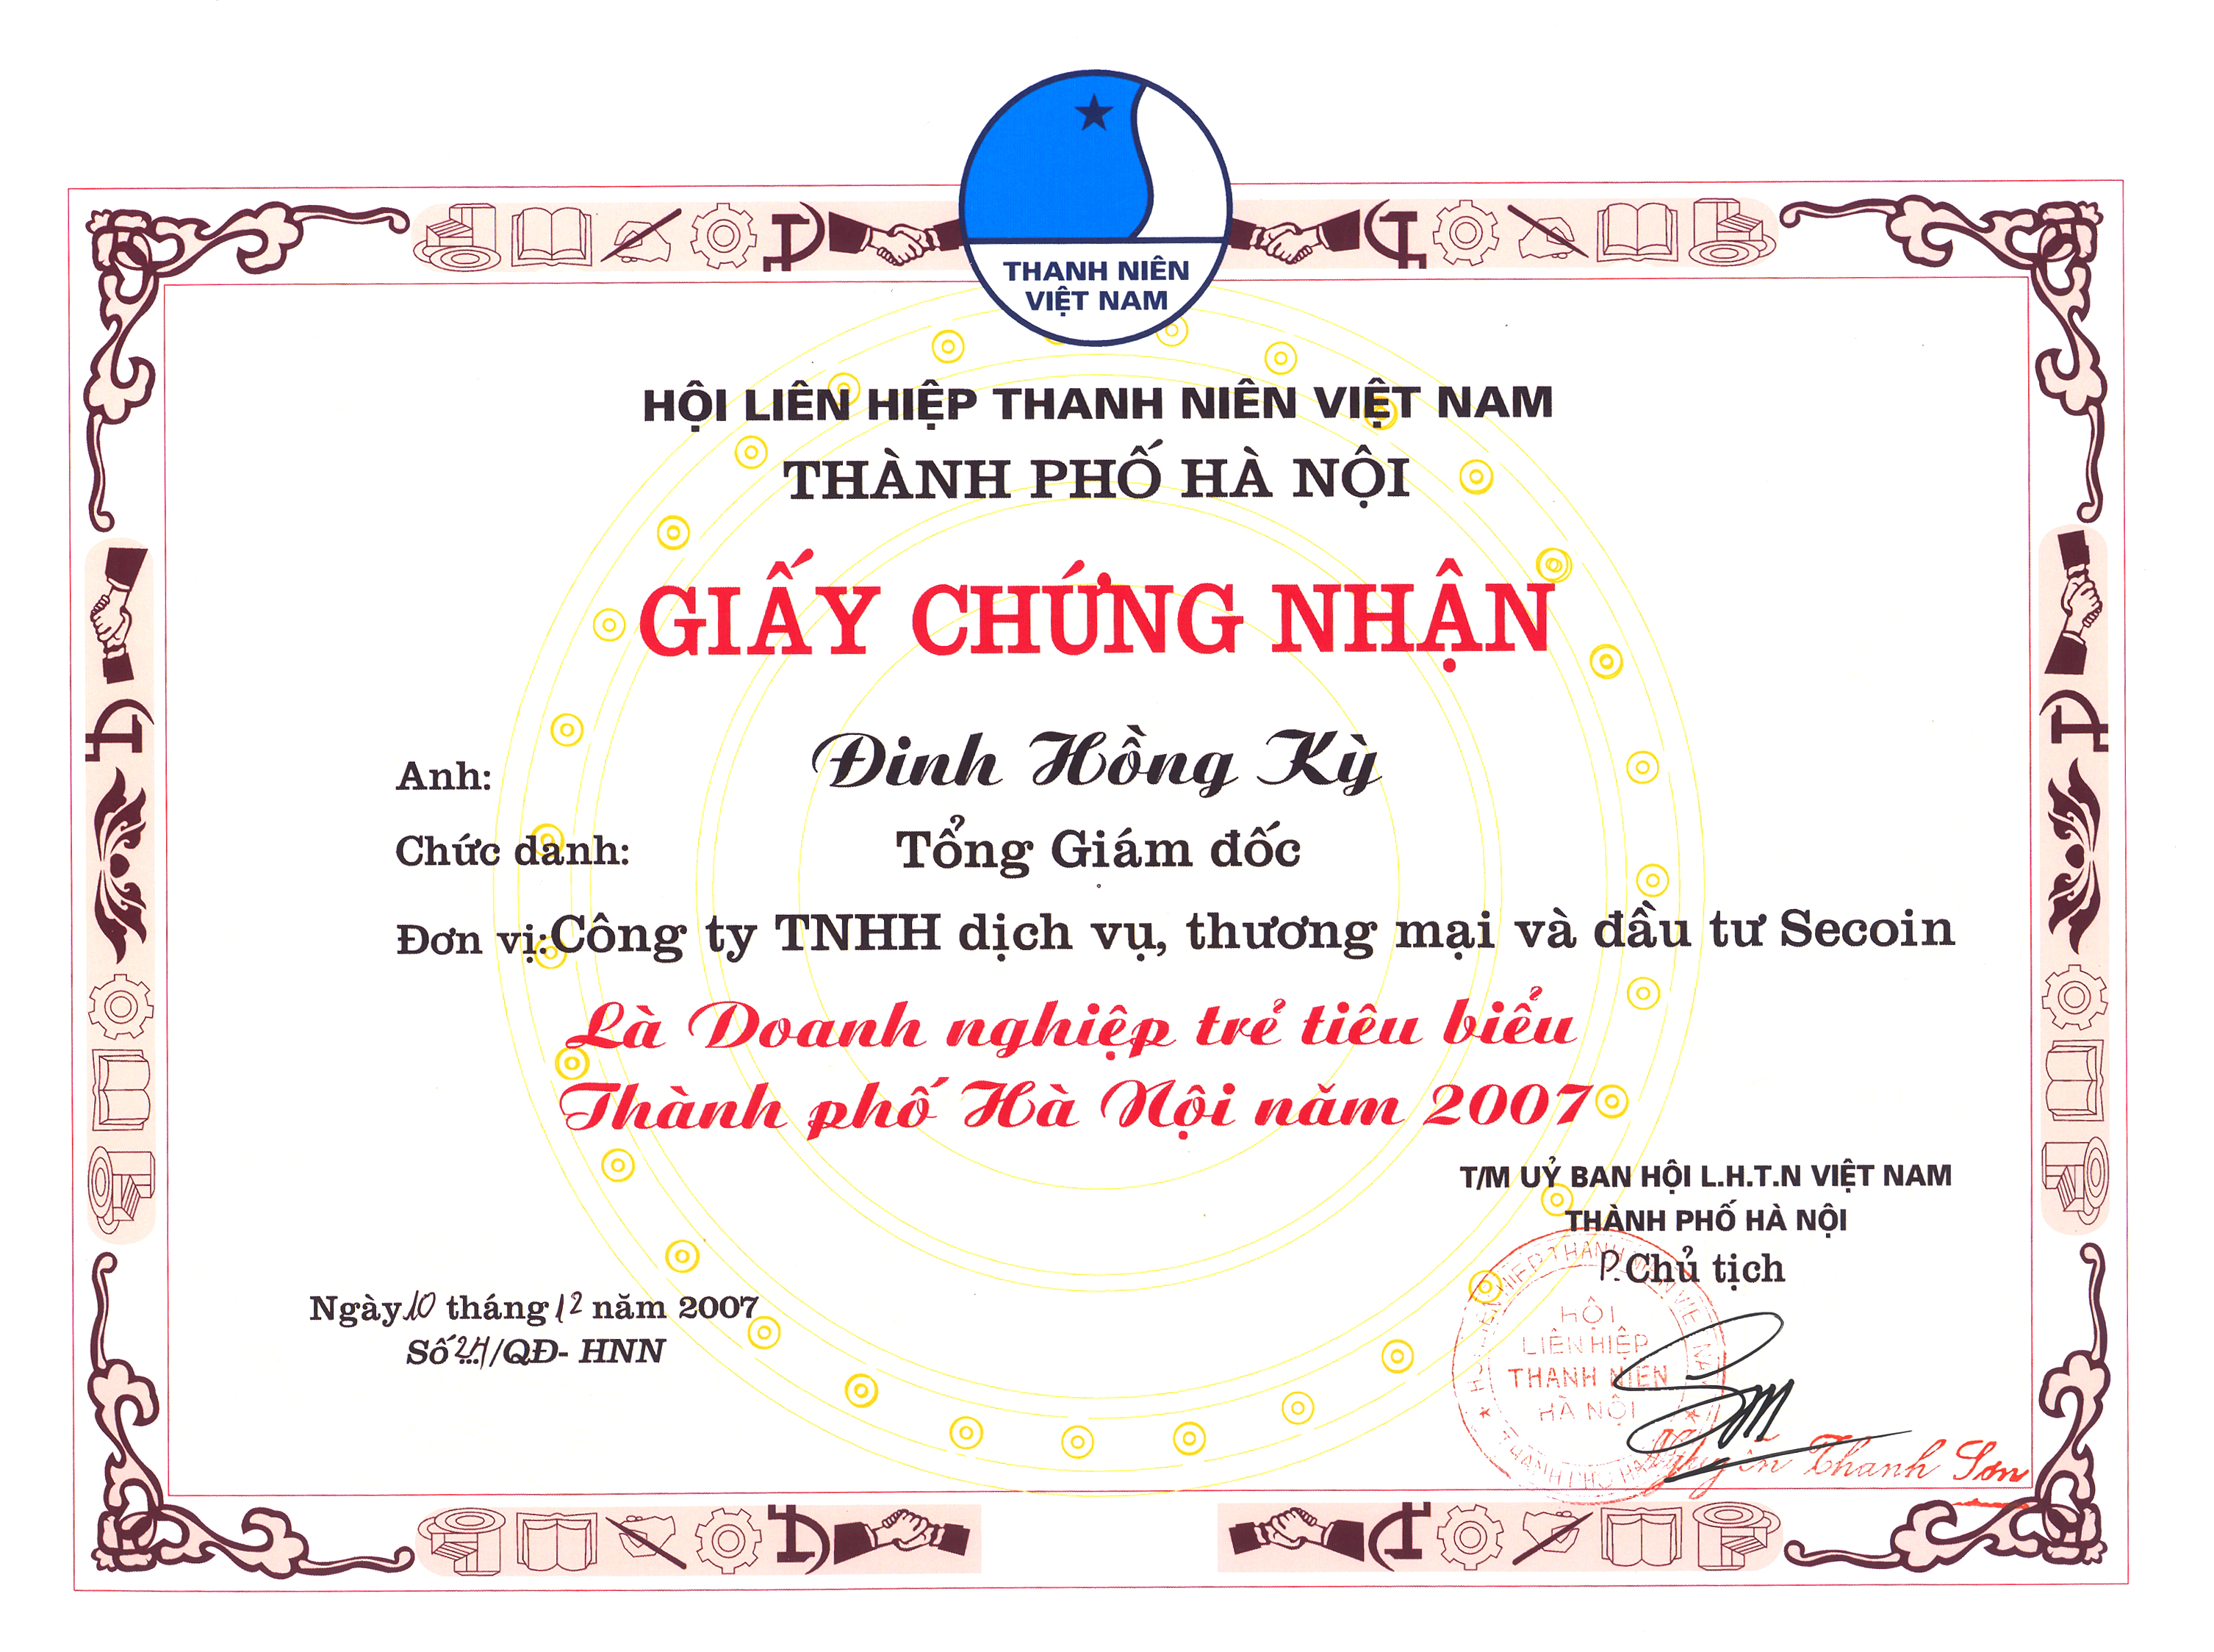 Hội liên hiệp thanh niên Việt Nam Tp. Hà Nội 